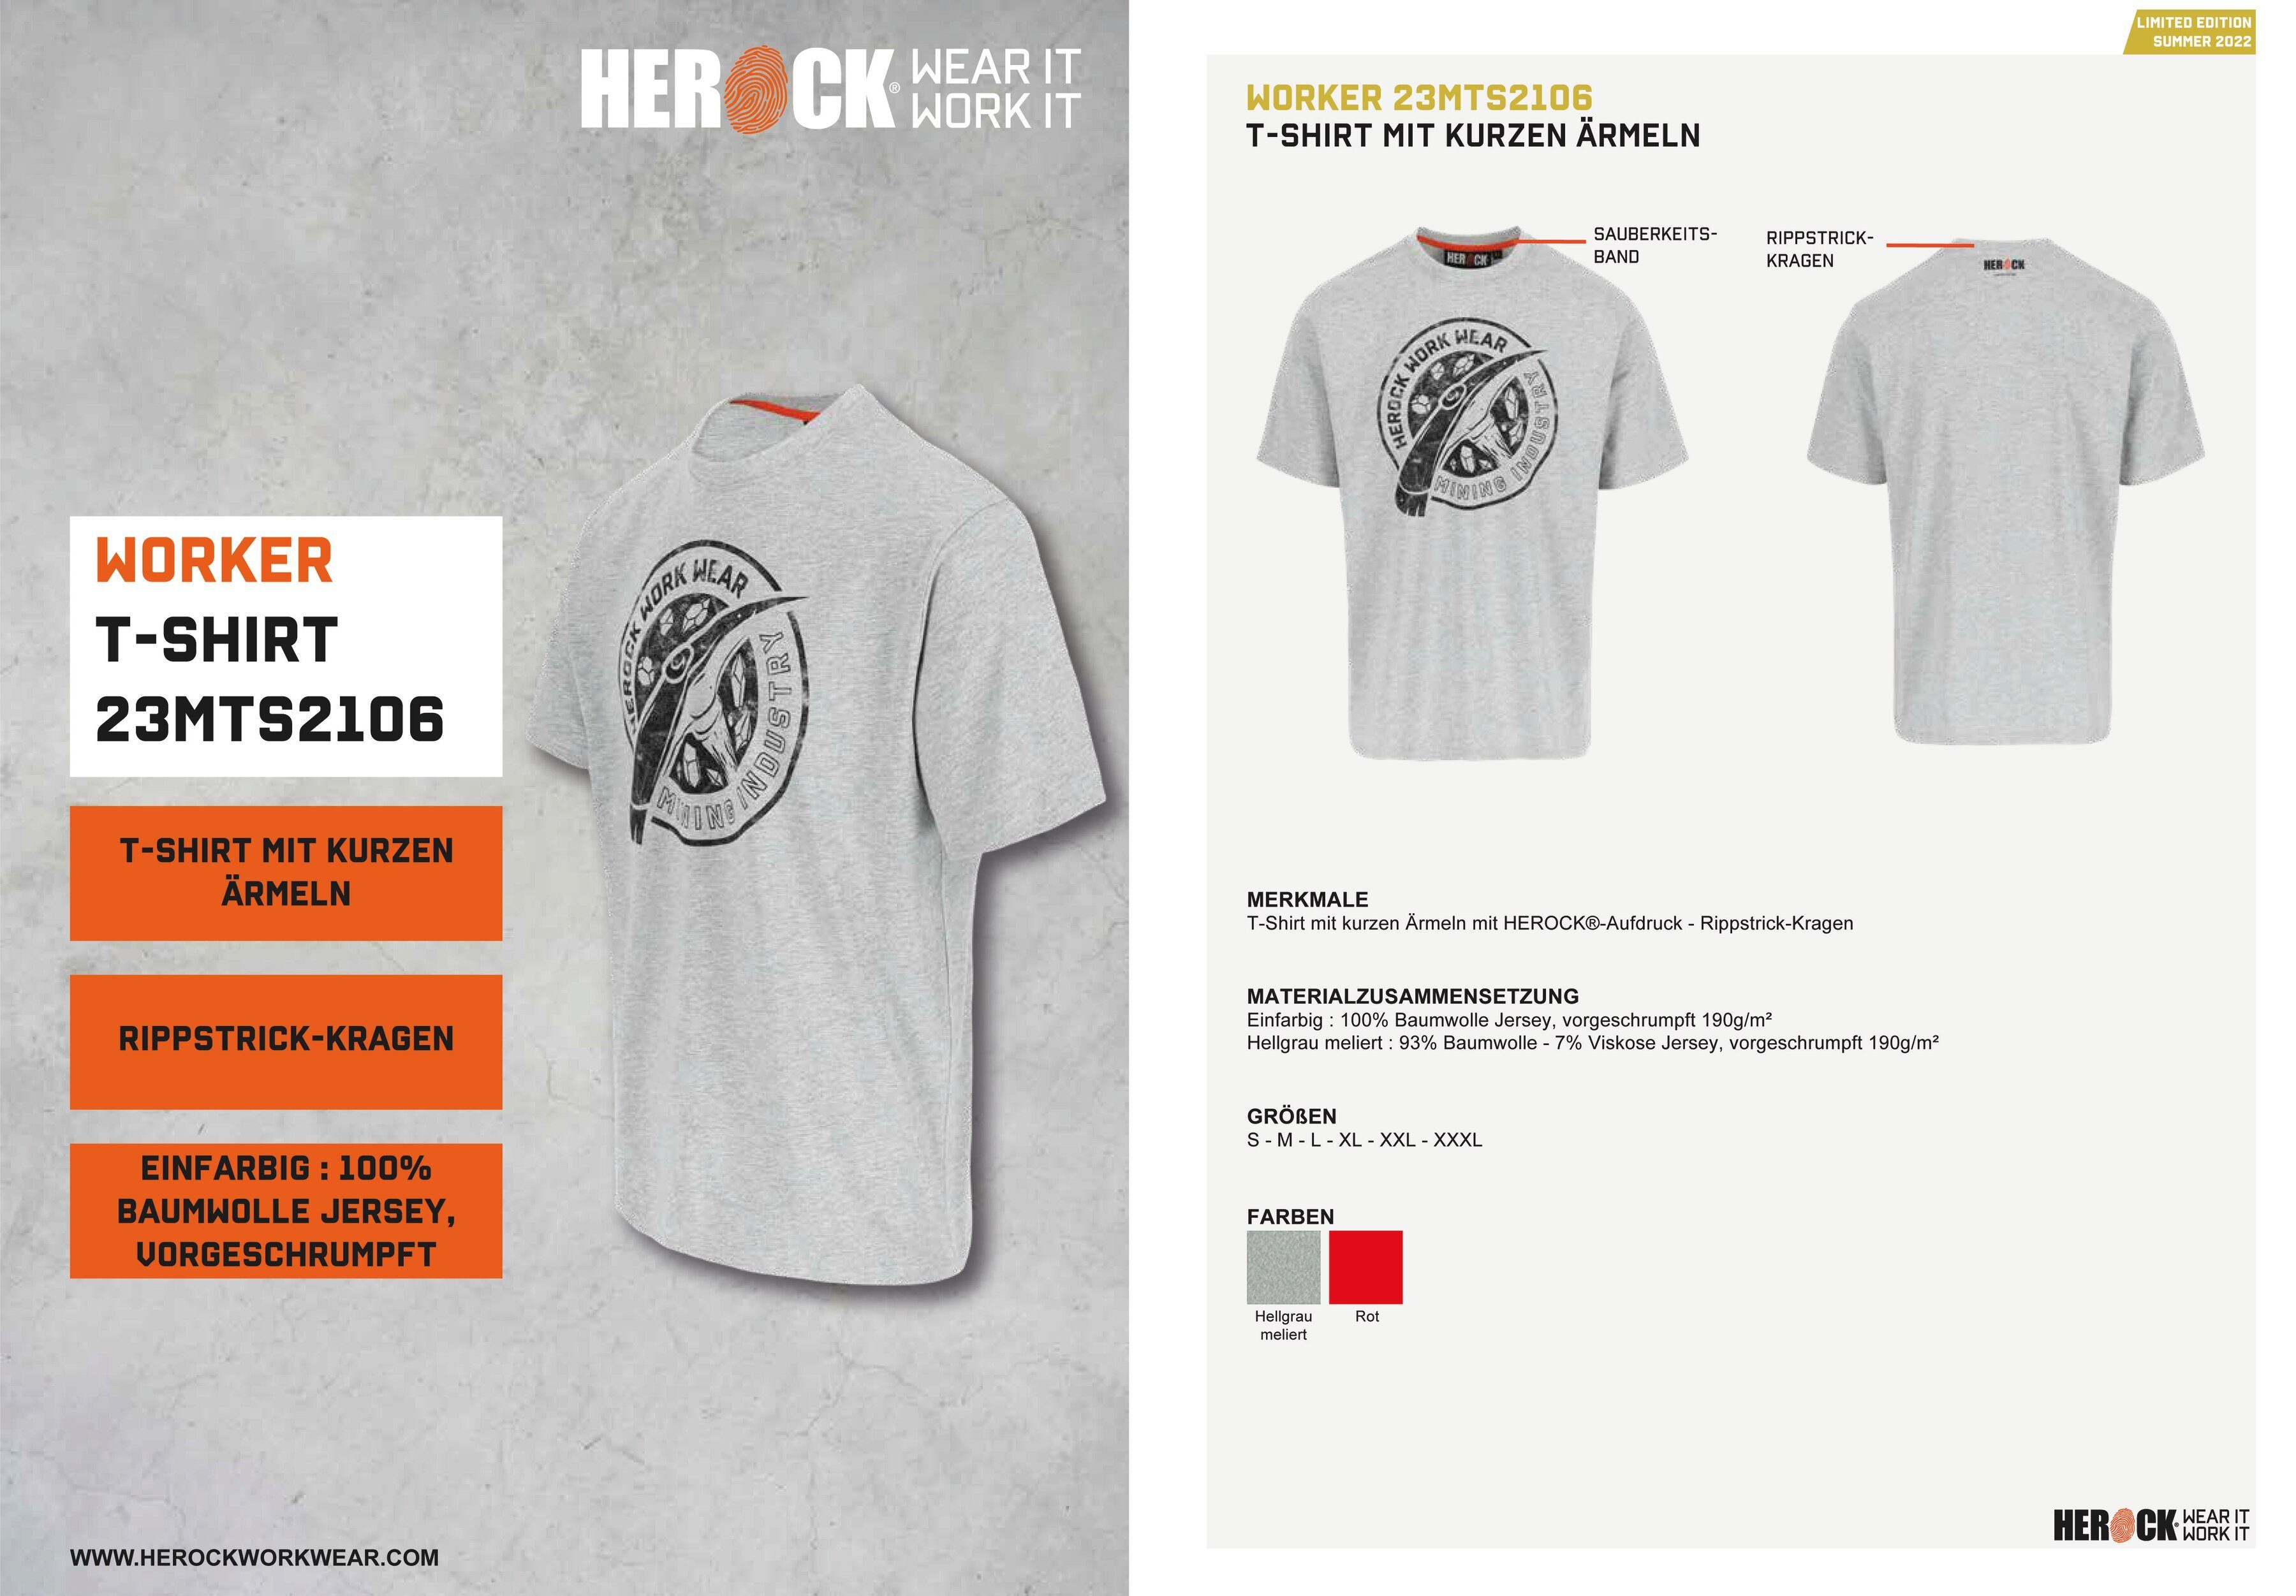 hellgrau Limited Worker verschiedene erhältlich in Herock Farben Edition, T-Shirt